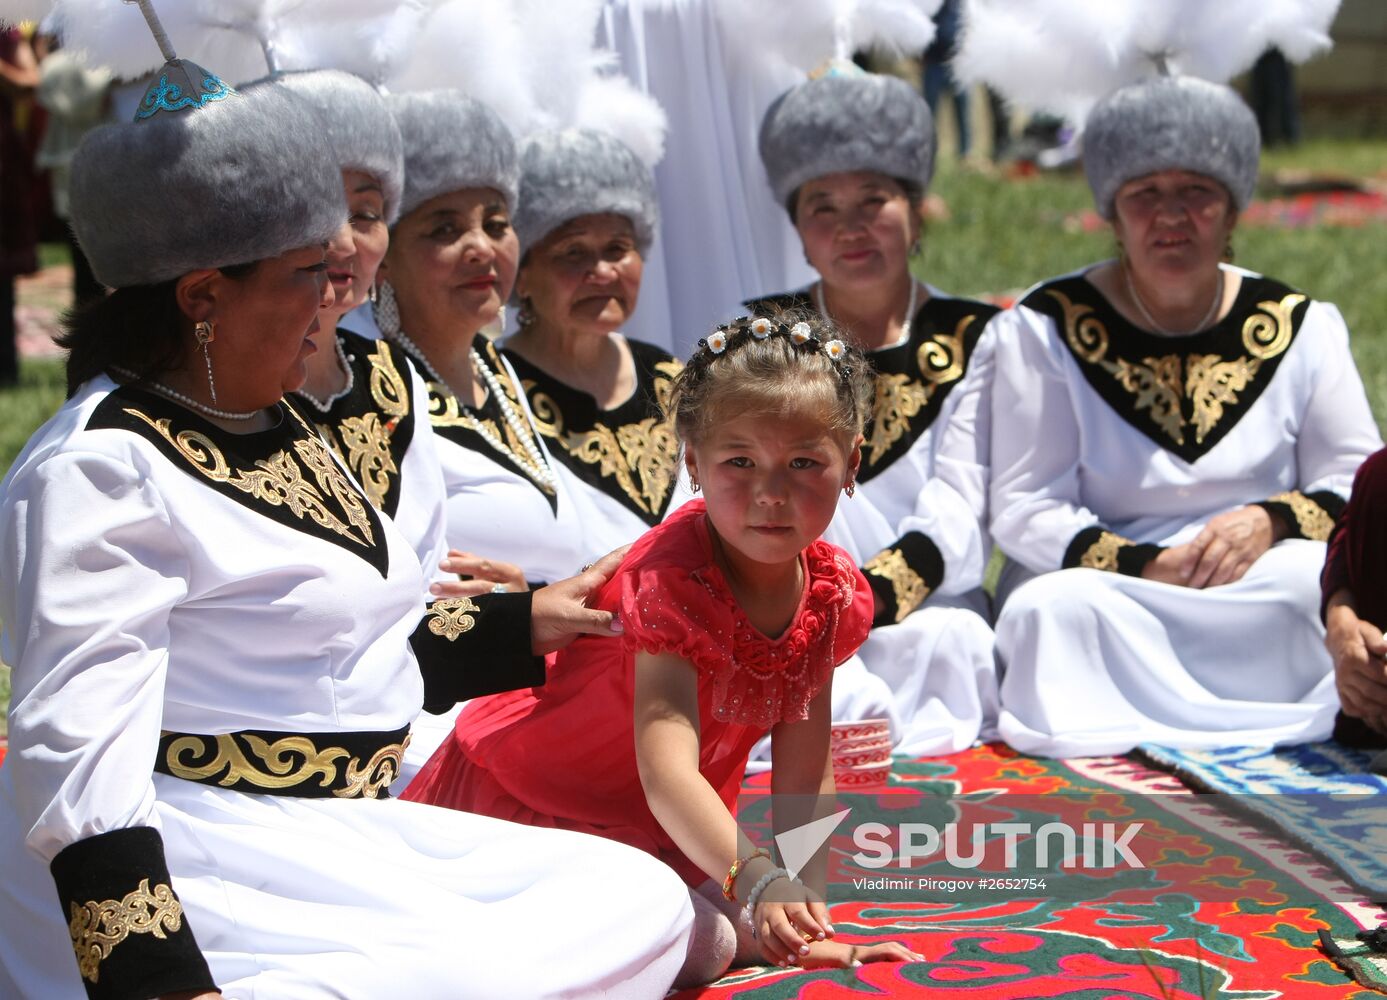 Kyrgyz Syrdagy folk festival in Kyrgyzstan